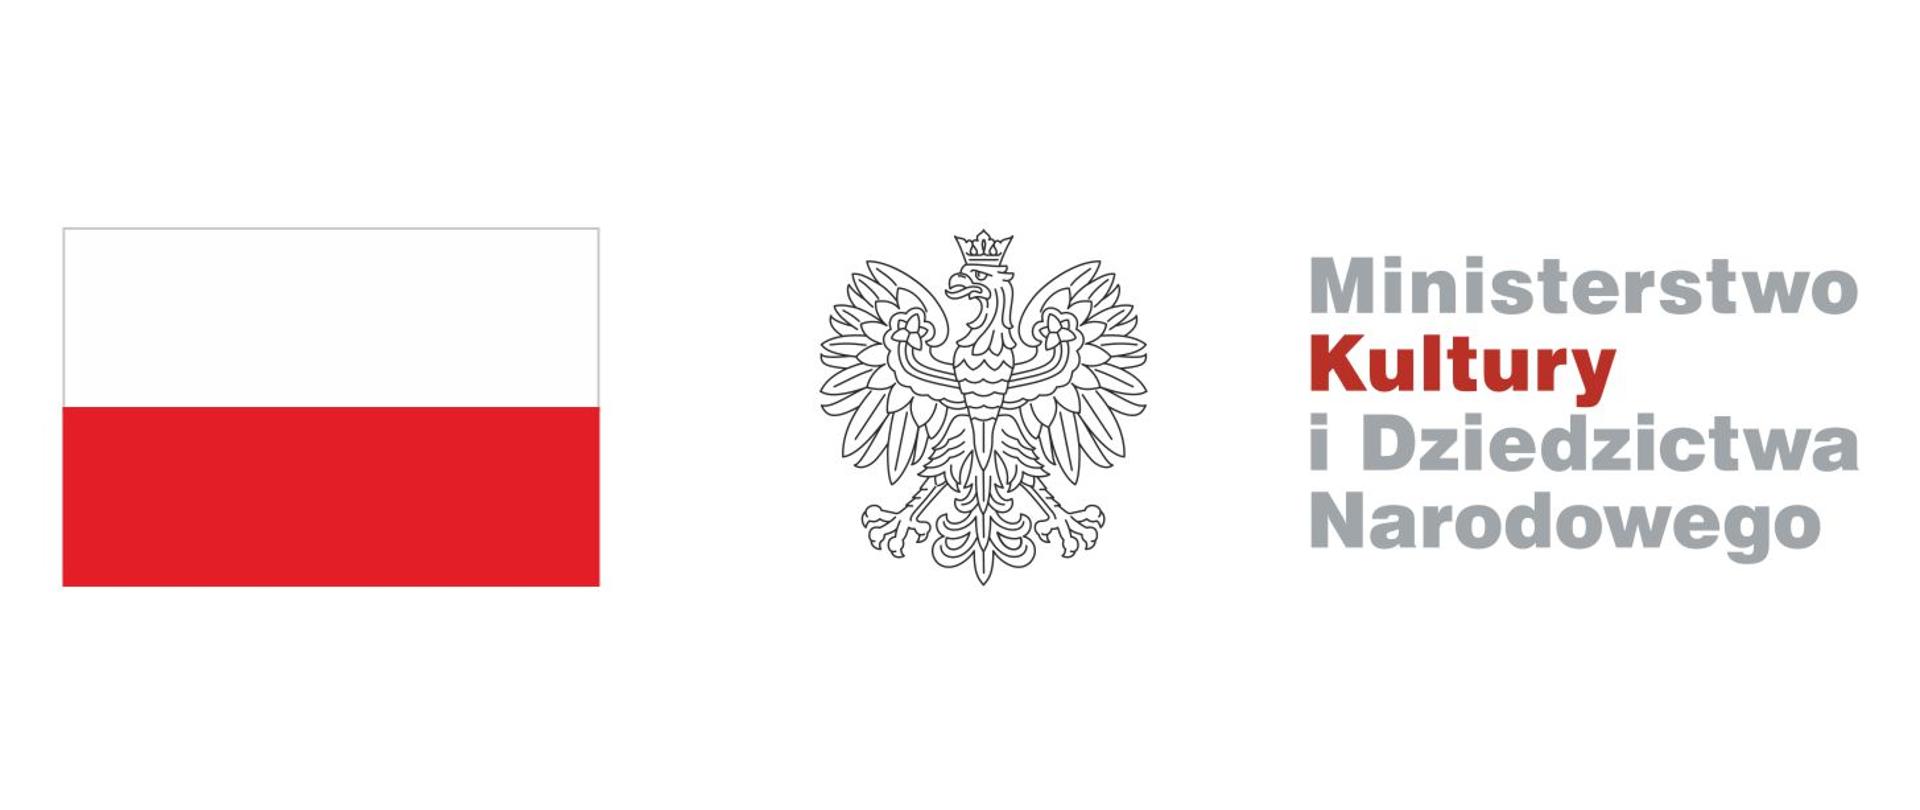 Grafika z flagą i godłem Rzeczypospolitej Polski oraz logiem Ministerstwa Kultury i Dziedzictwa Narodowego zbudowanego na podstawie podanej nazwy logotypu.